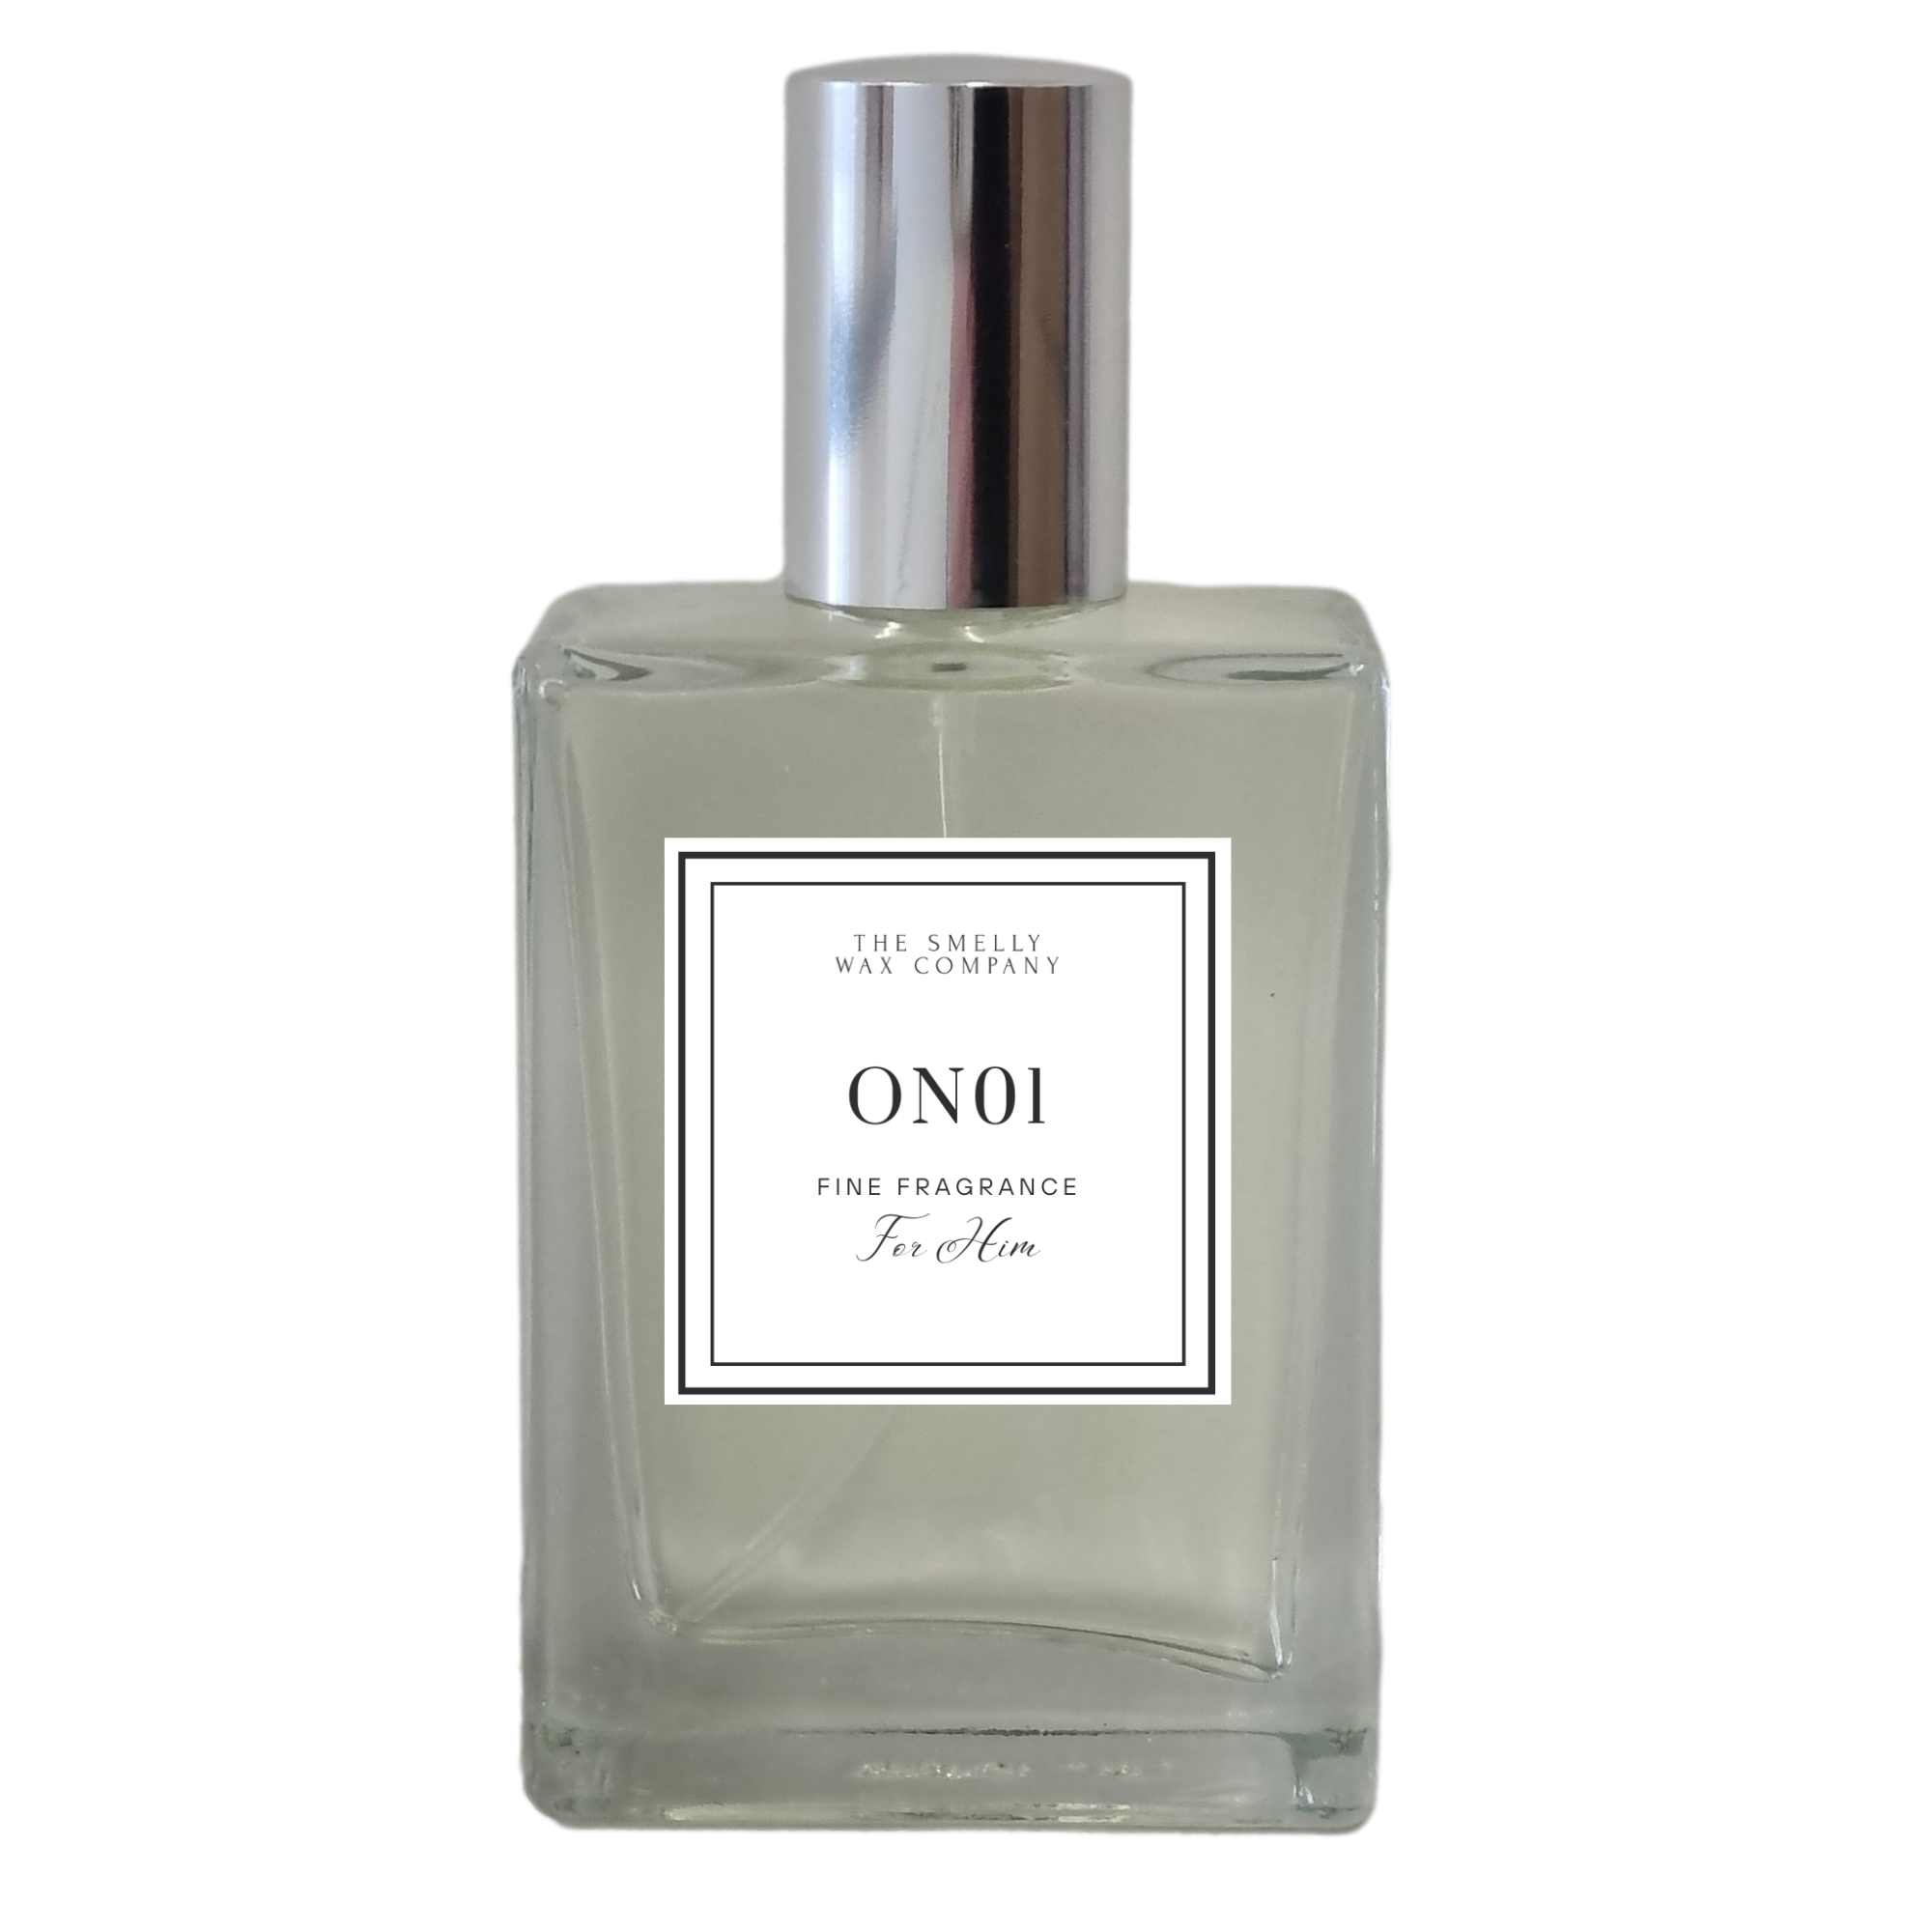 Louis Vuitton Ombre Nomade - Eau de Parfum